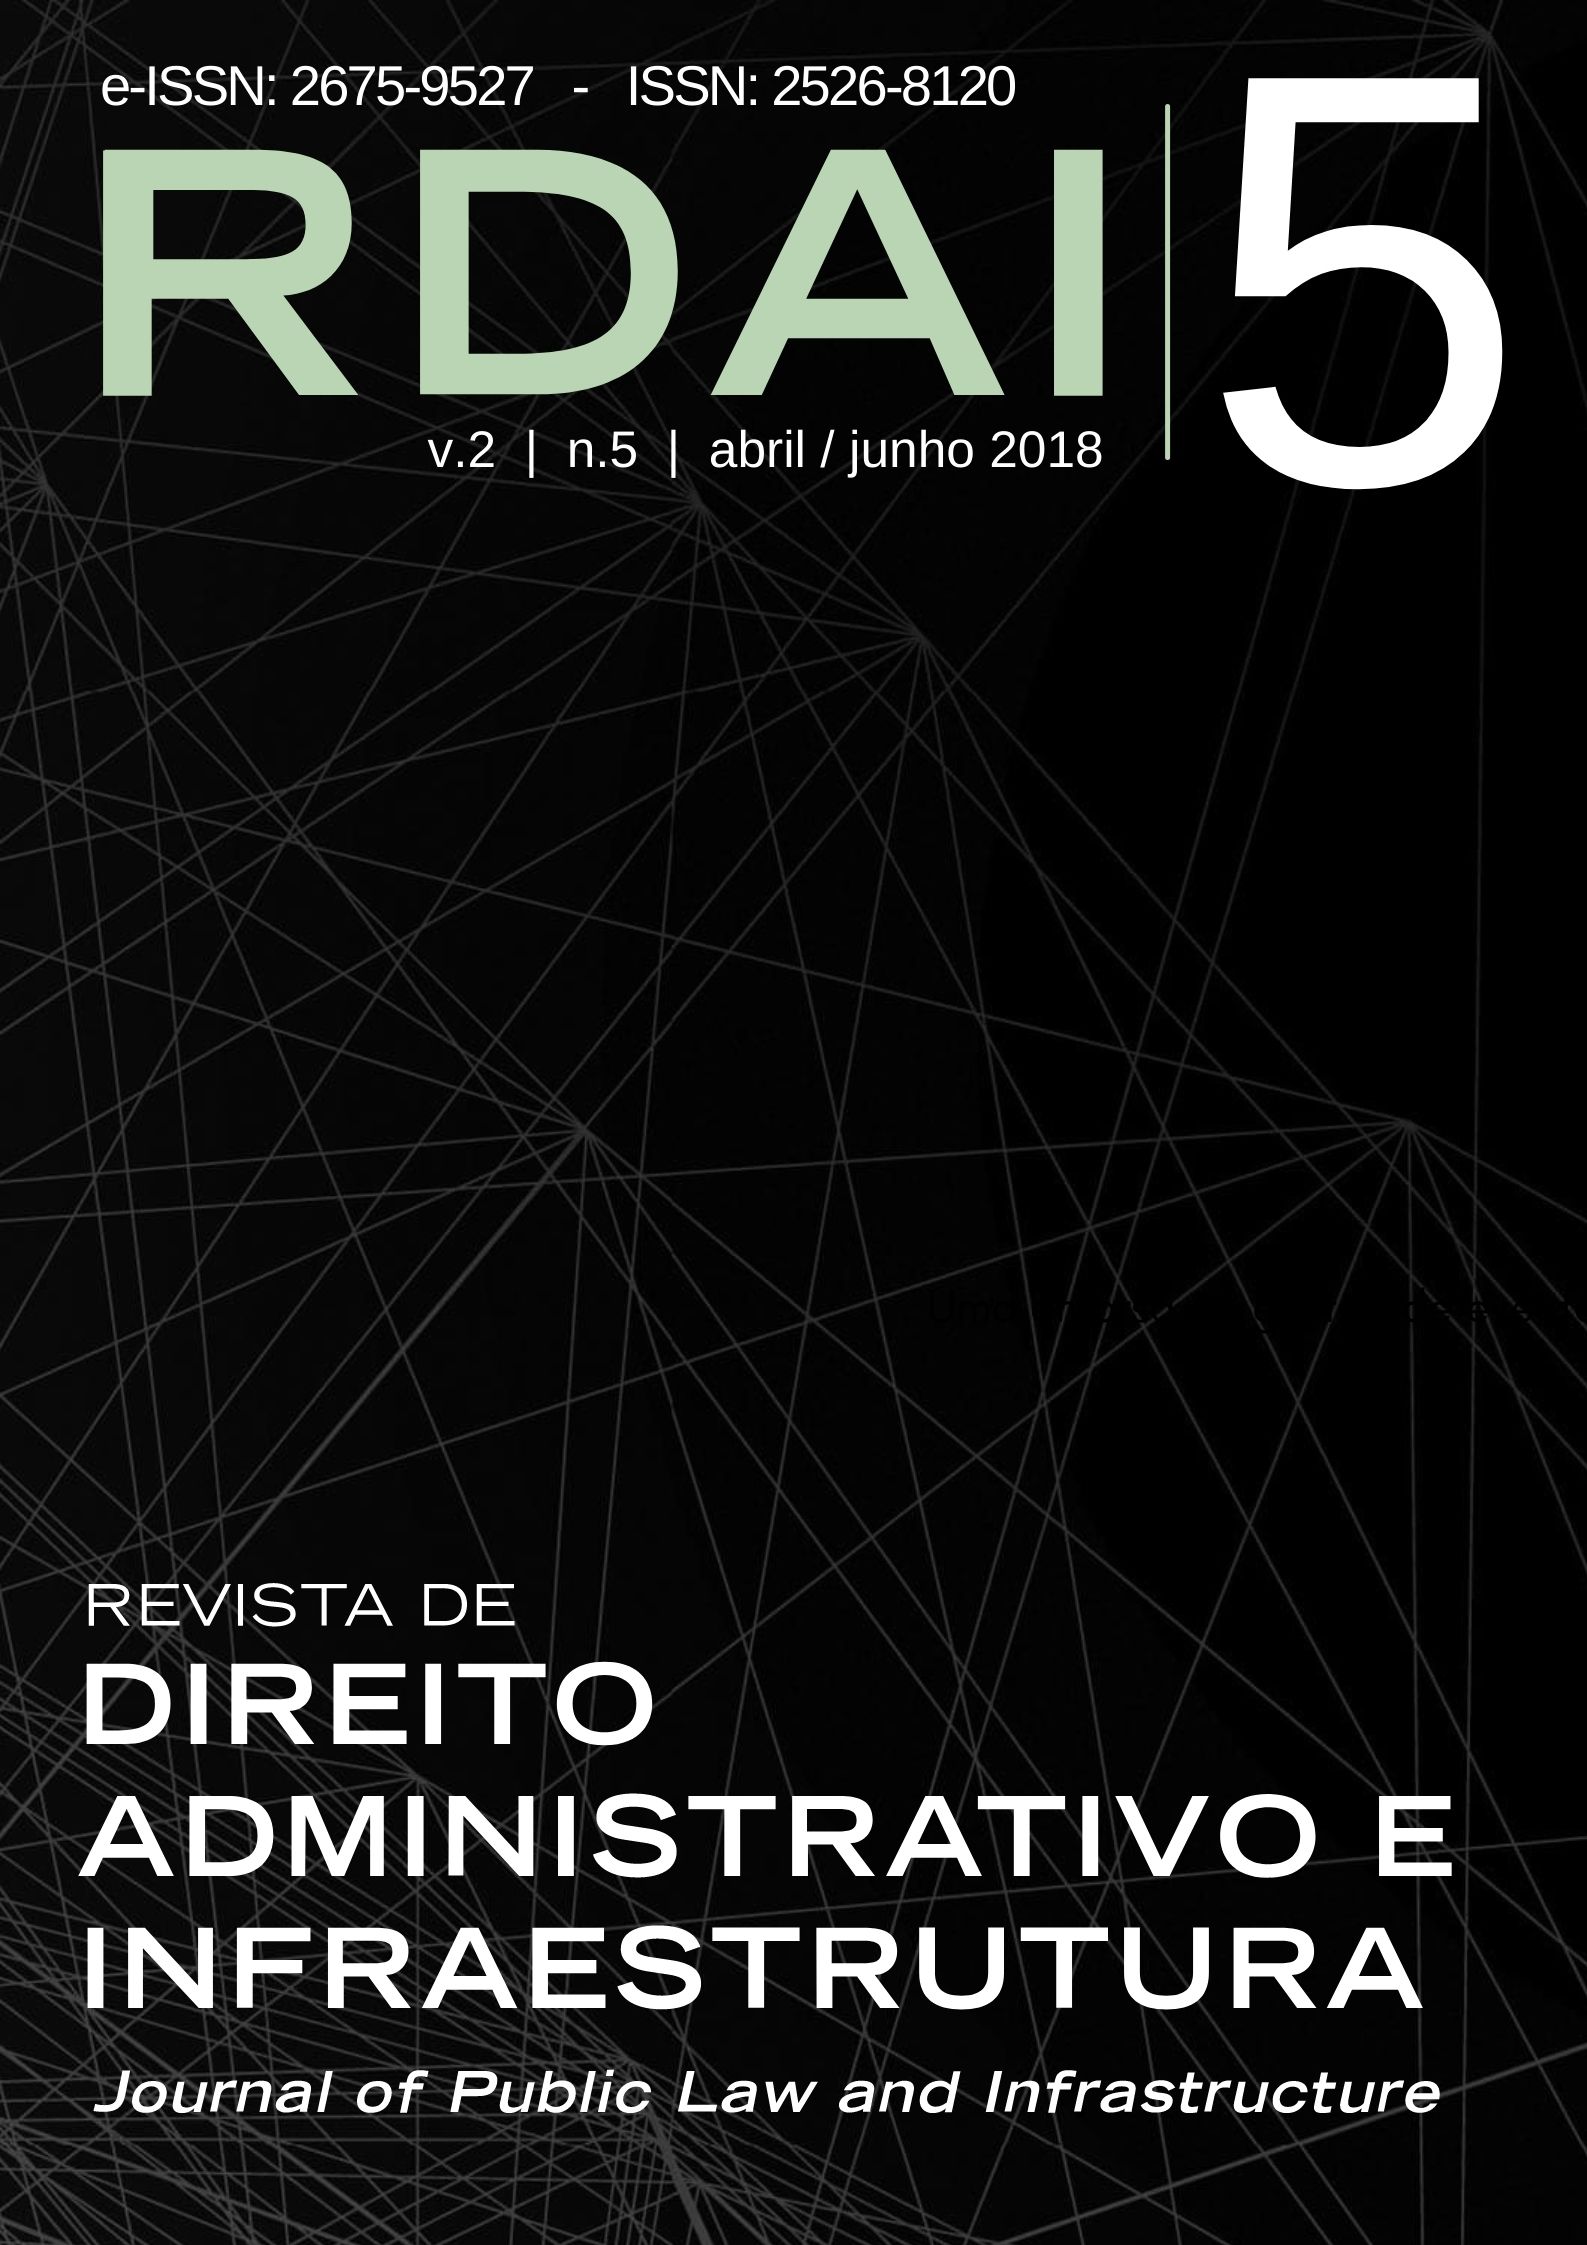 Revista de Direito Administrativo e Infraestrutura - RDAI